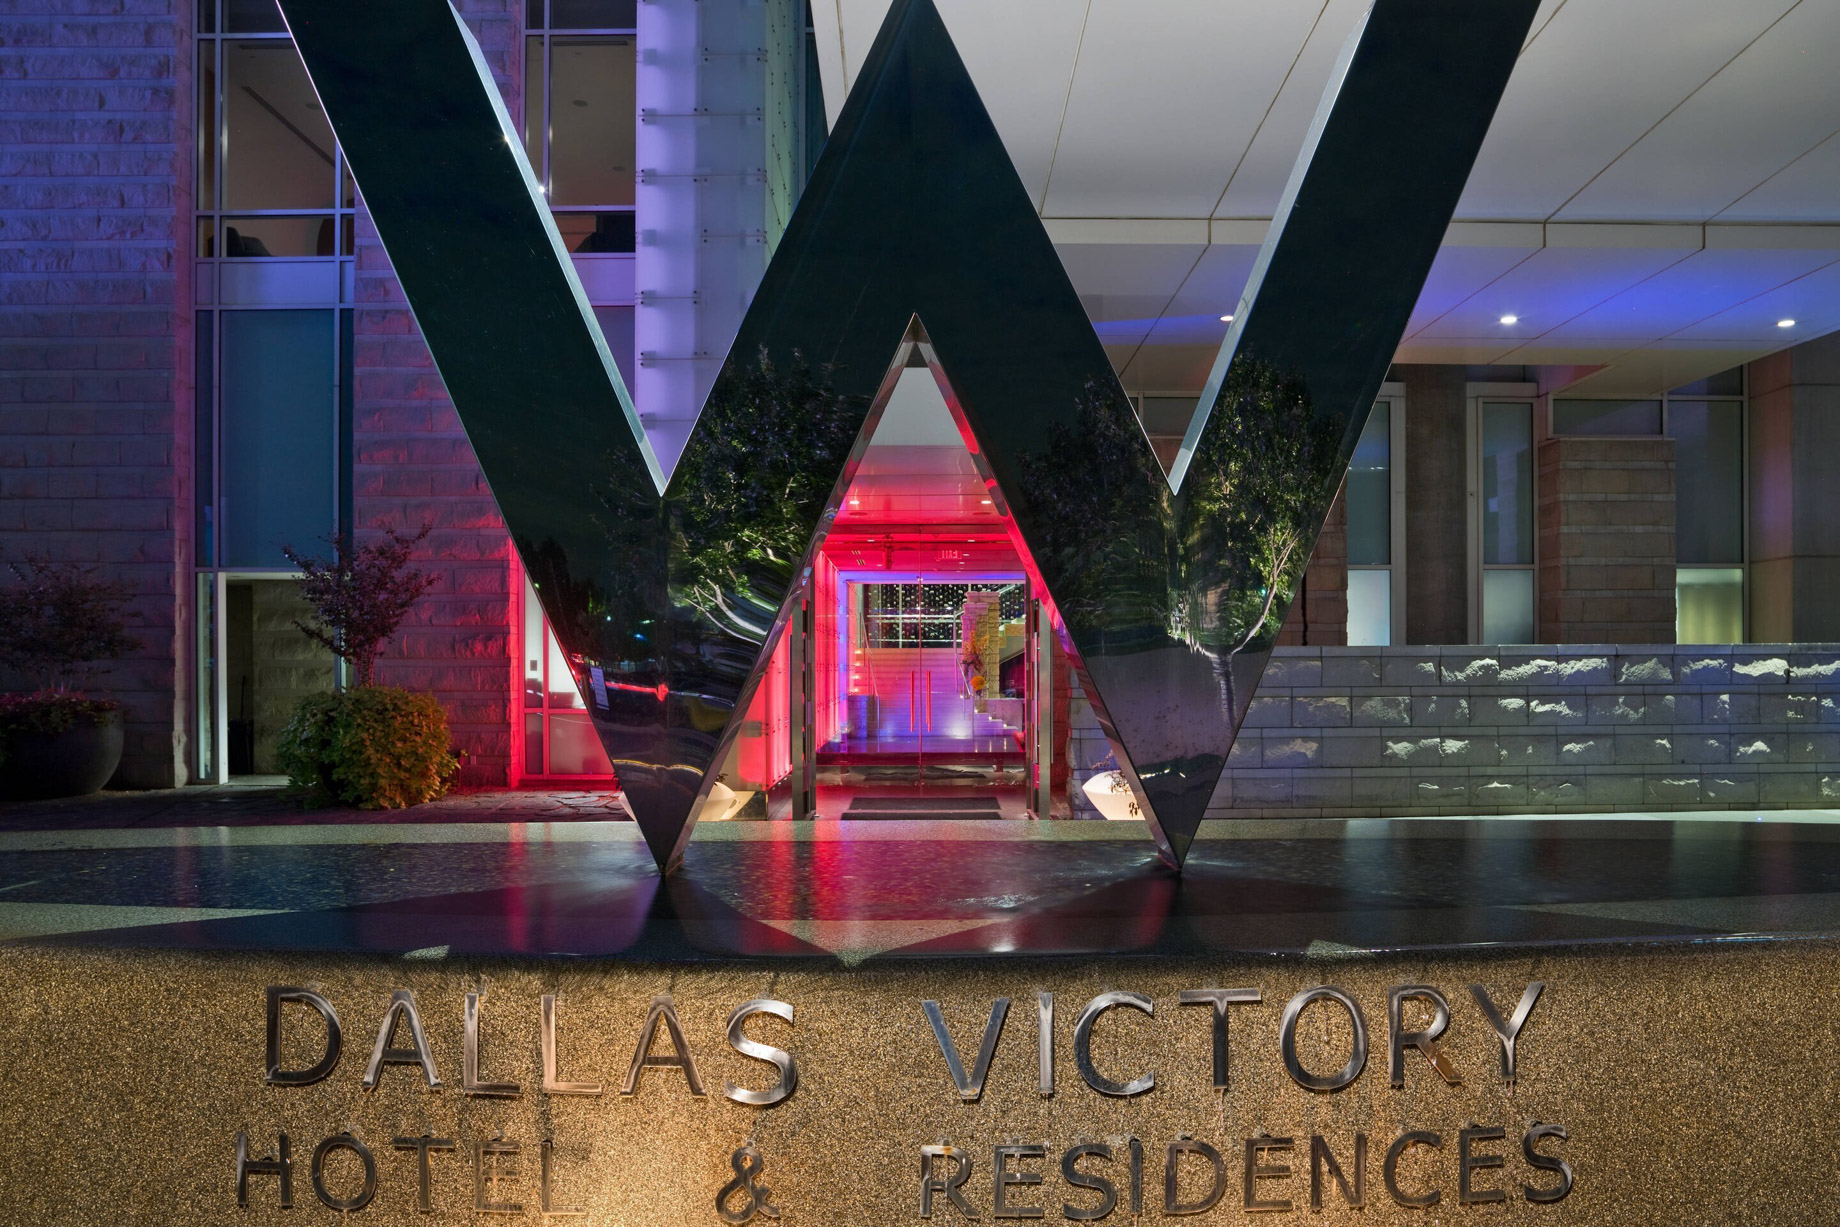 W Dallas Victory Hotel - Dallas, TX, USA - Hotel W Sign Night